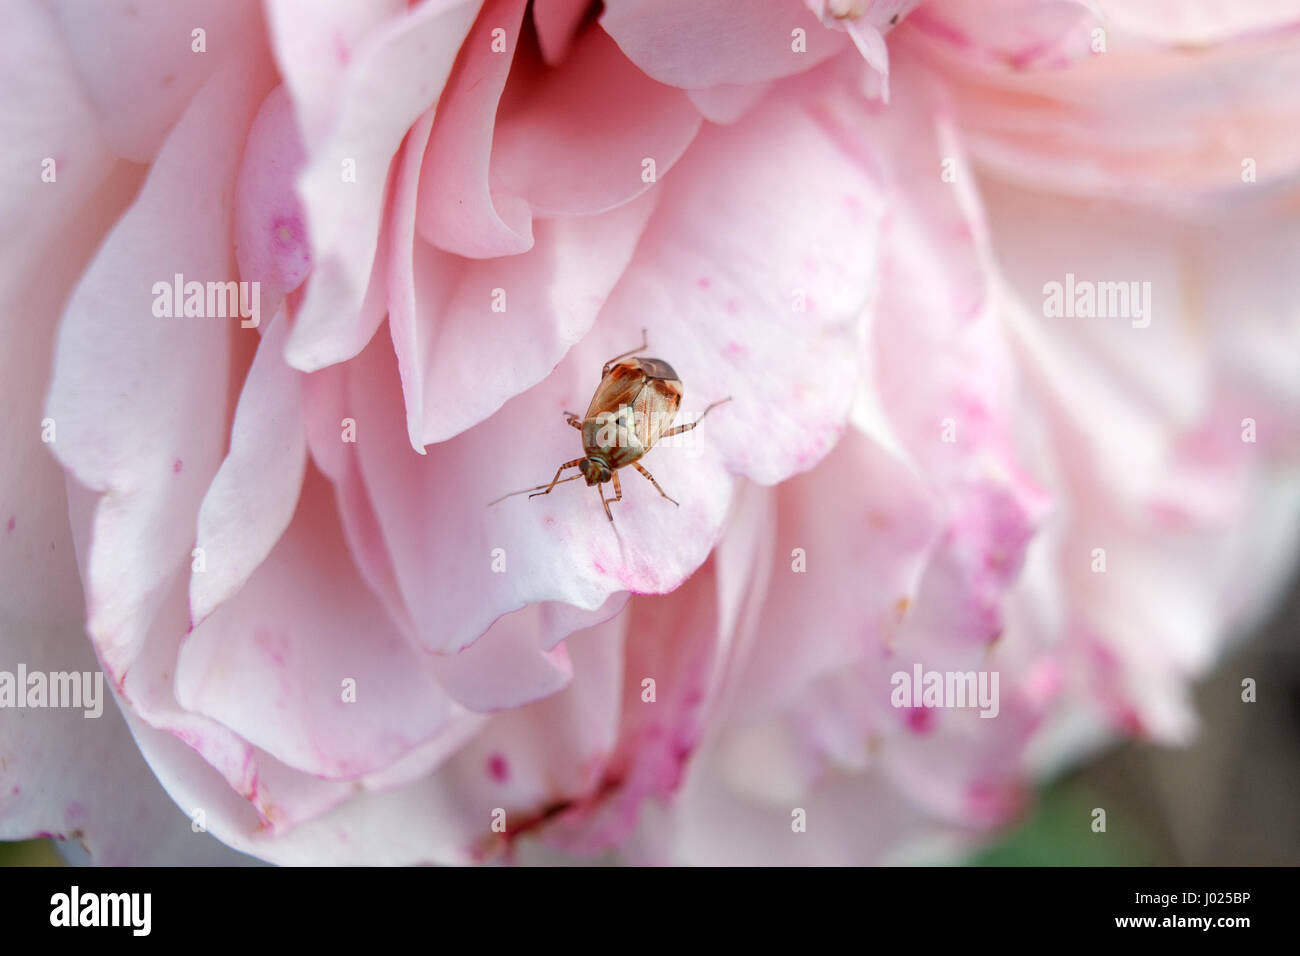 Kleine bunte Fehler auf eine rosa Rose. Garten-Szene der Close-up-Insekt, das auf eine rosa Rose ruht. Unscharfen Hintergrund mit Fokus auf ein Tier. Stockfoto